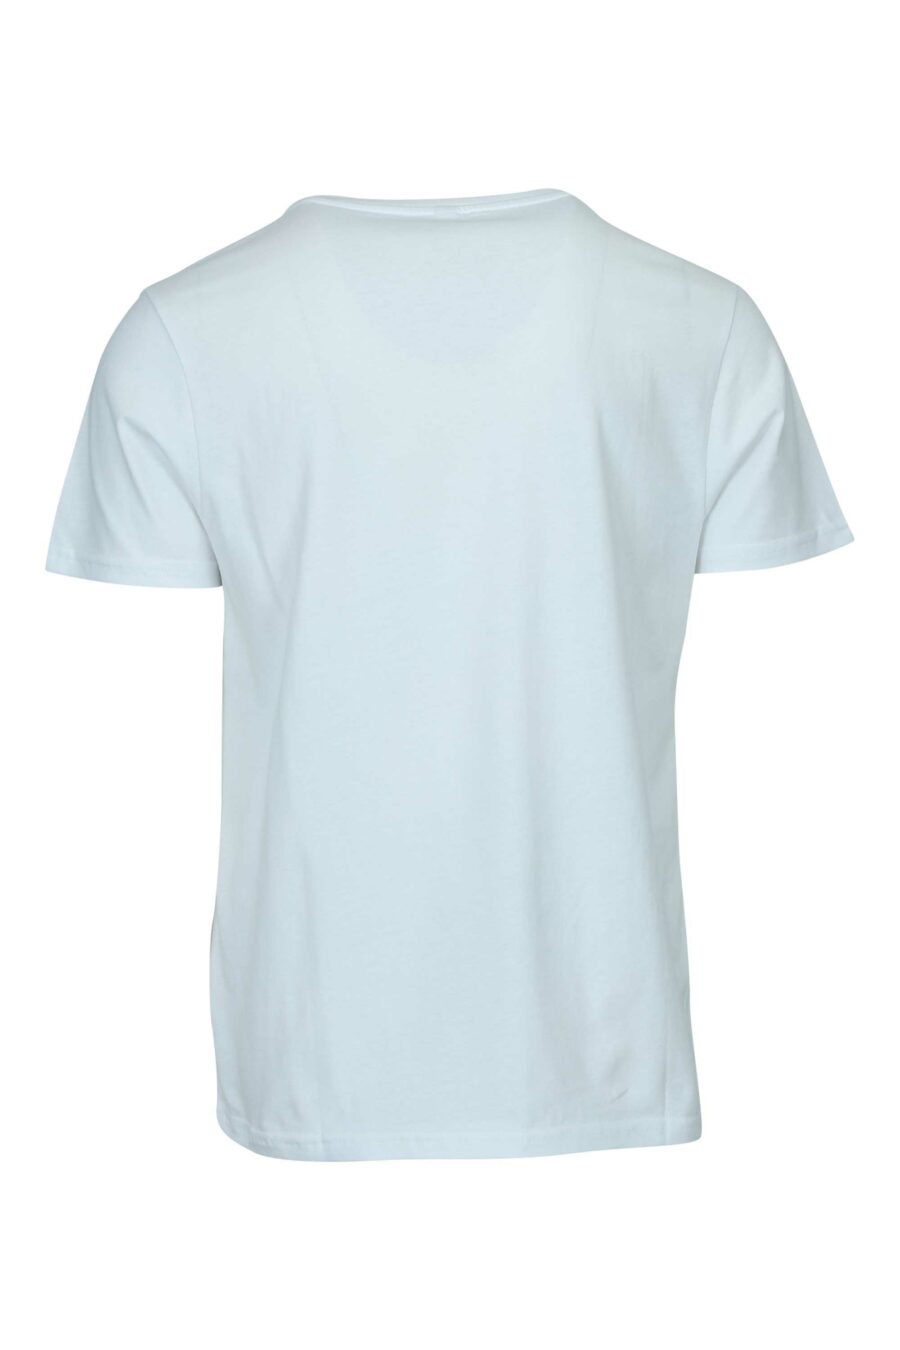 Weißes T-Shirt mit einfarbigem Gummilogo auf den Schultern - 667113671932 1